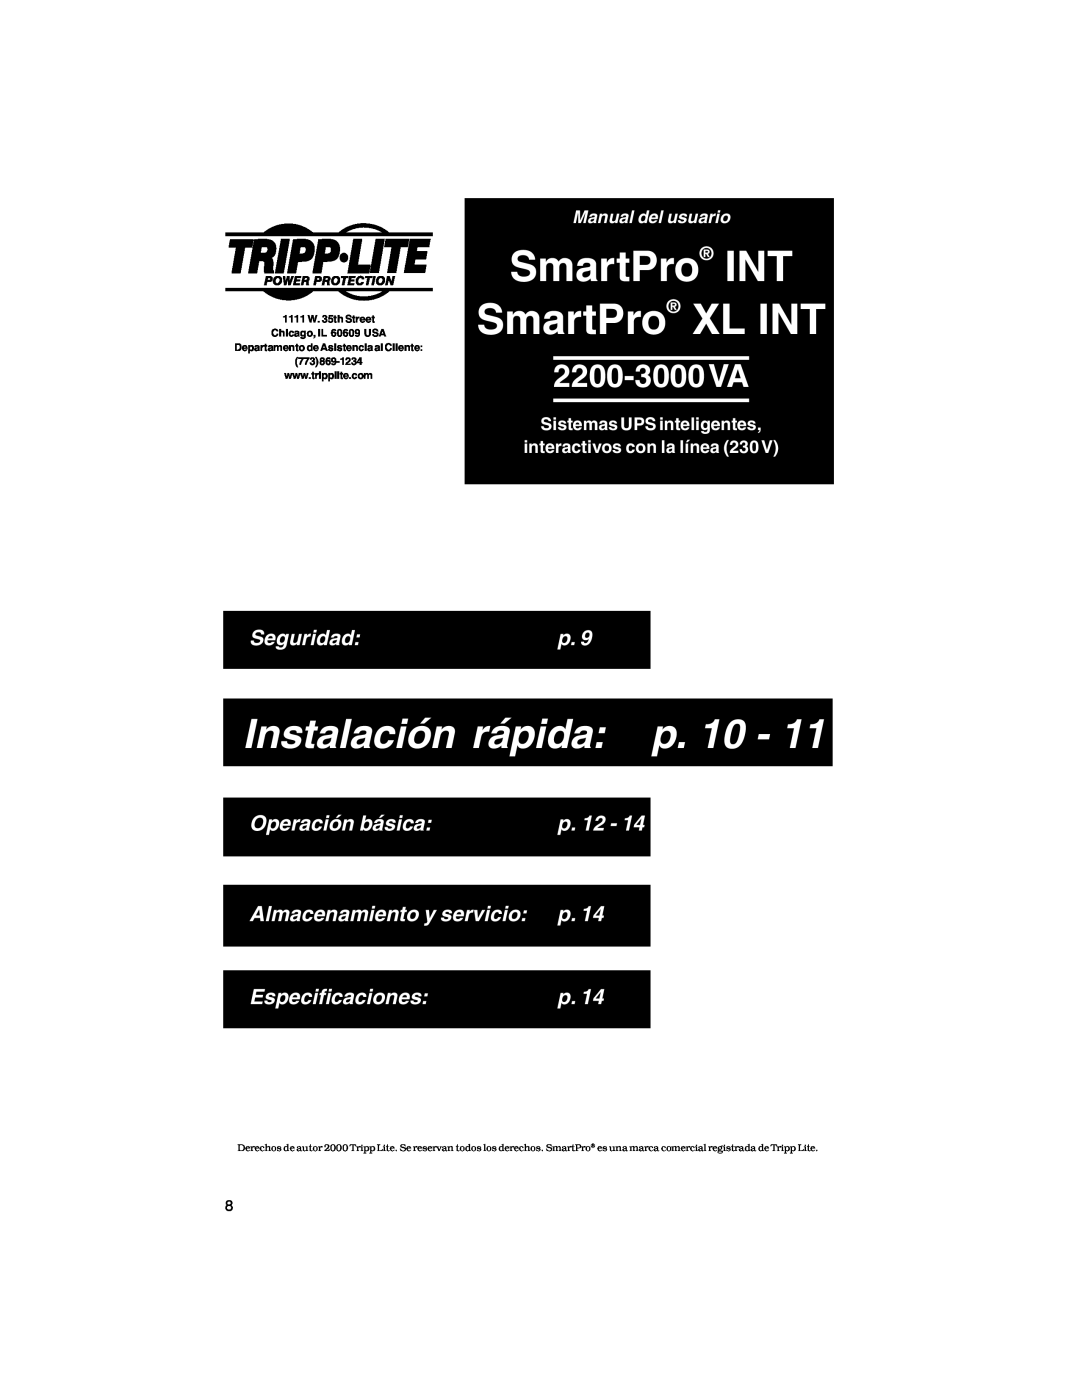 Tripp Lite SmartPro INT SmartPro XL INT, 2200-3000VA, Seguridad, Operación básica, p. 12, Almacenamiento y servicio p 